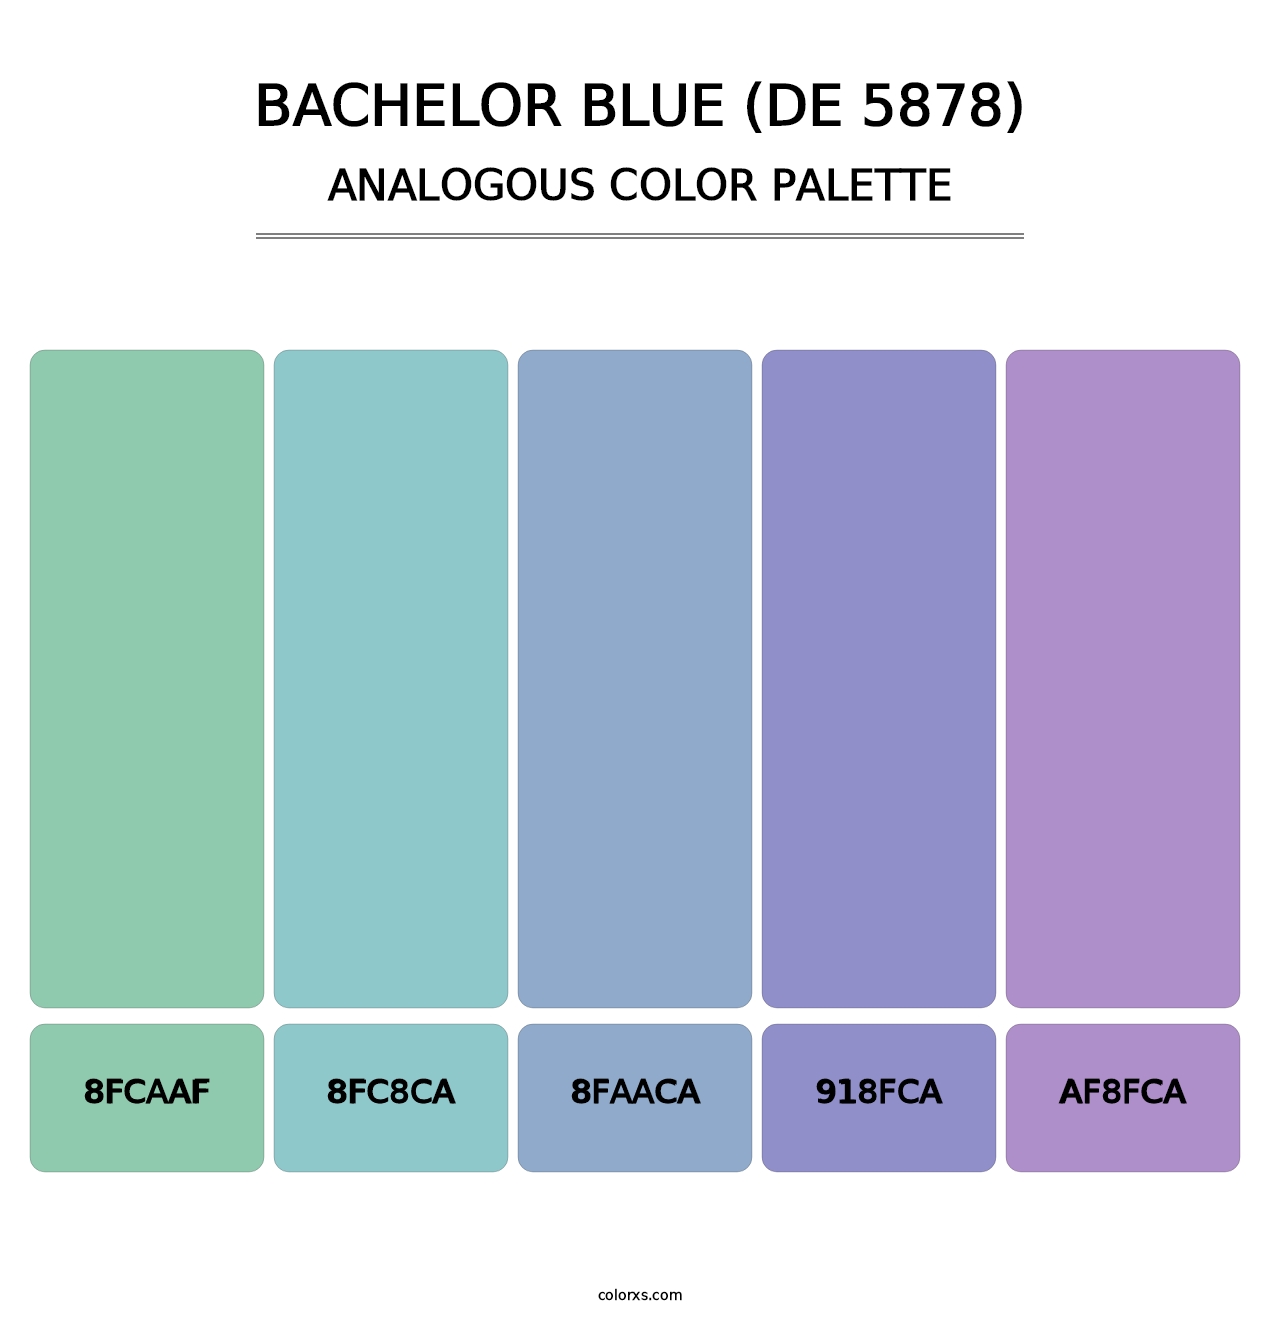 Bachelor Blue (DE 5878) - Analogous Color Palette